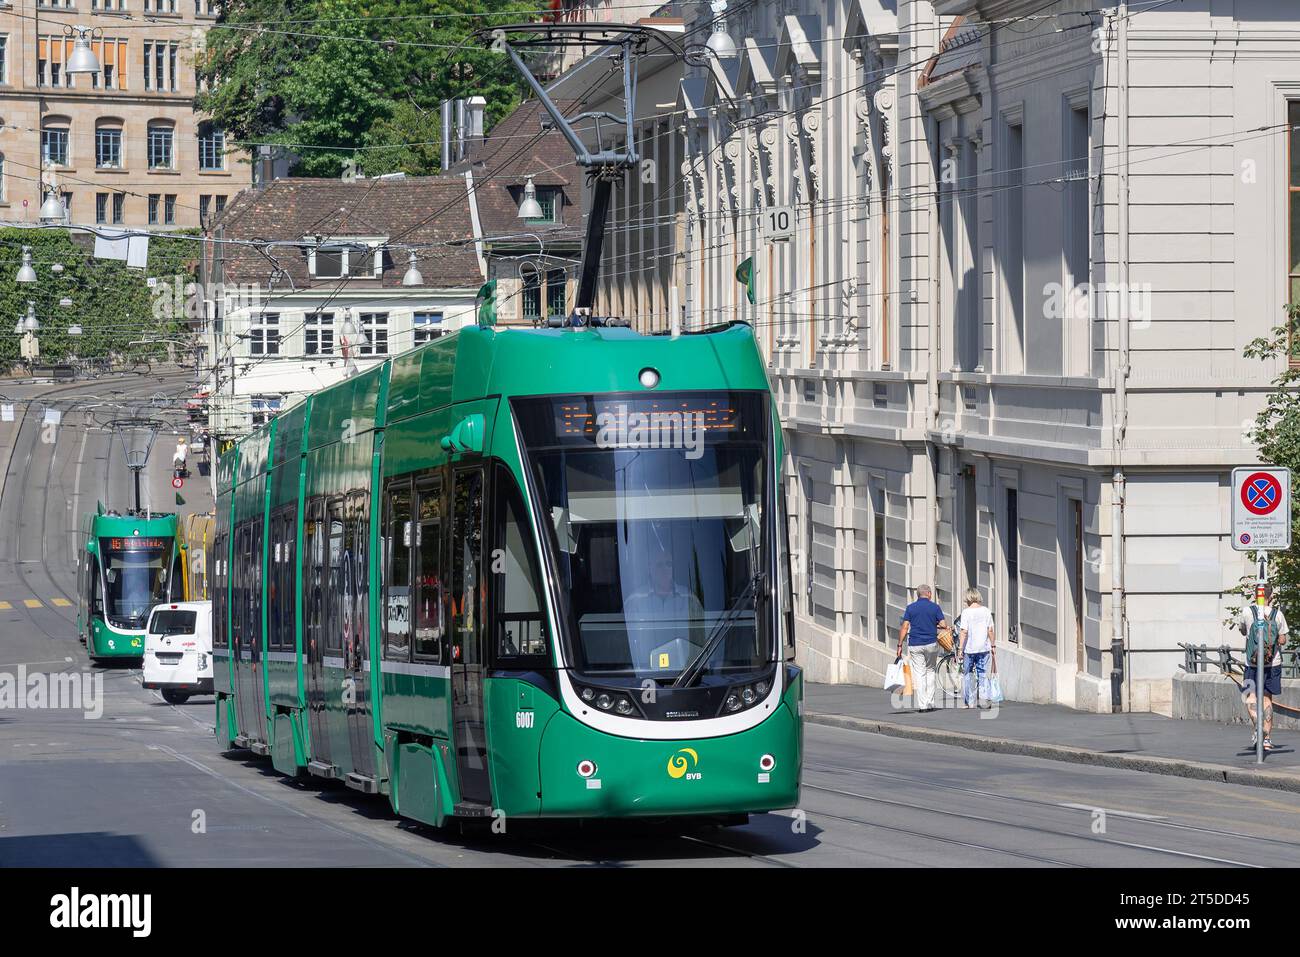 Basel, Switzerland - Green tram Bombardier Flexity 2 in a street. Stock Photo